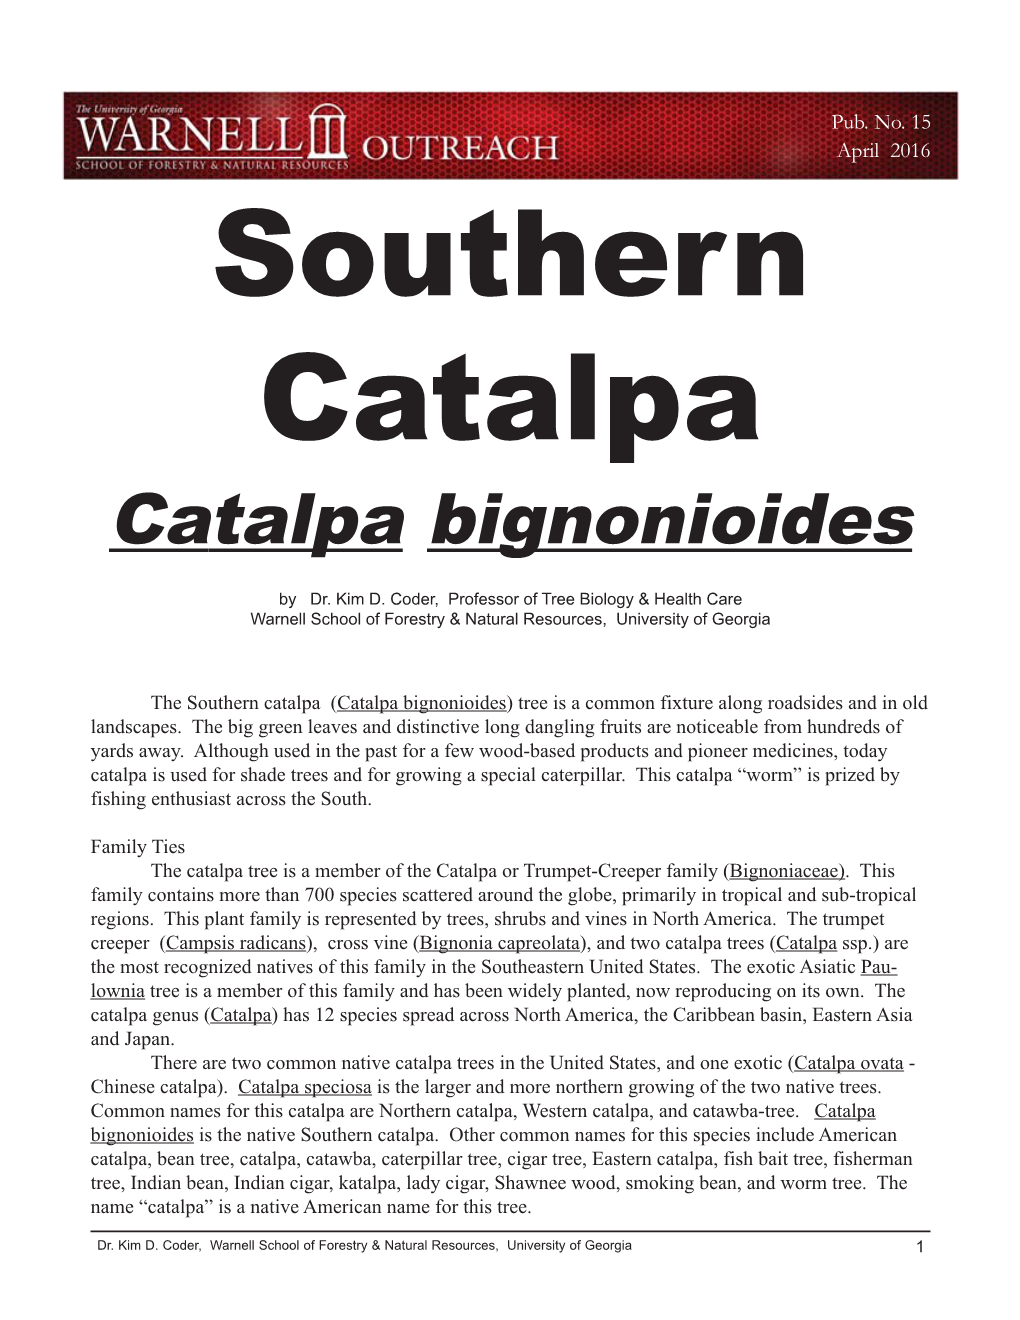 Catalpa Bignonioides